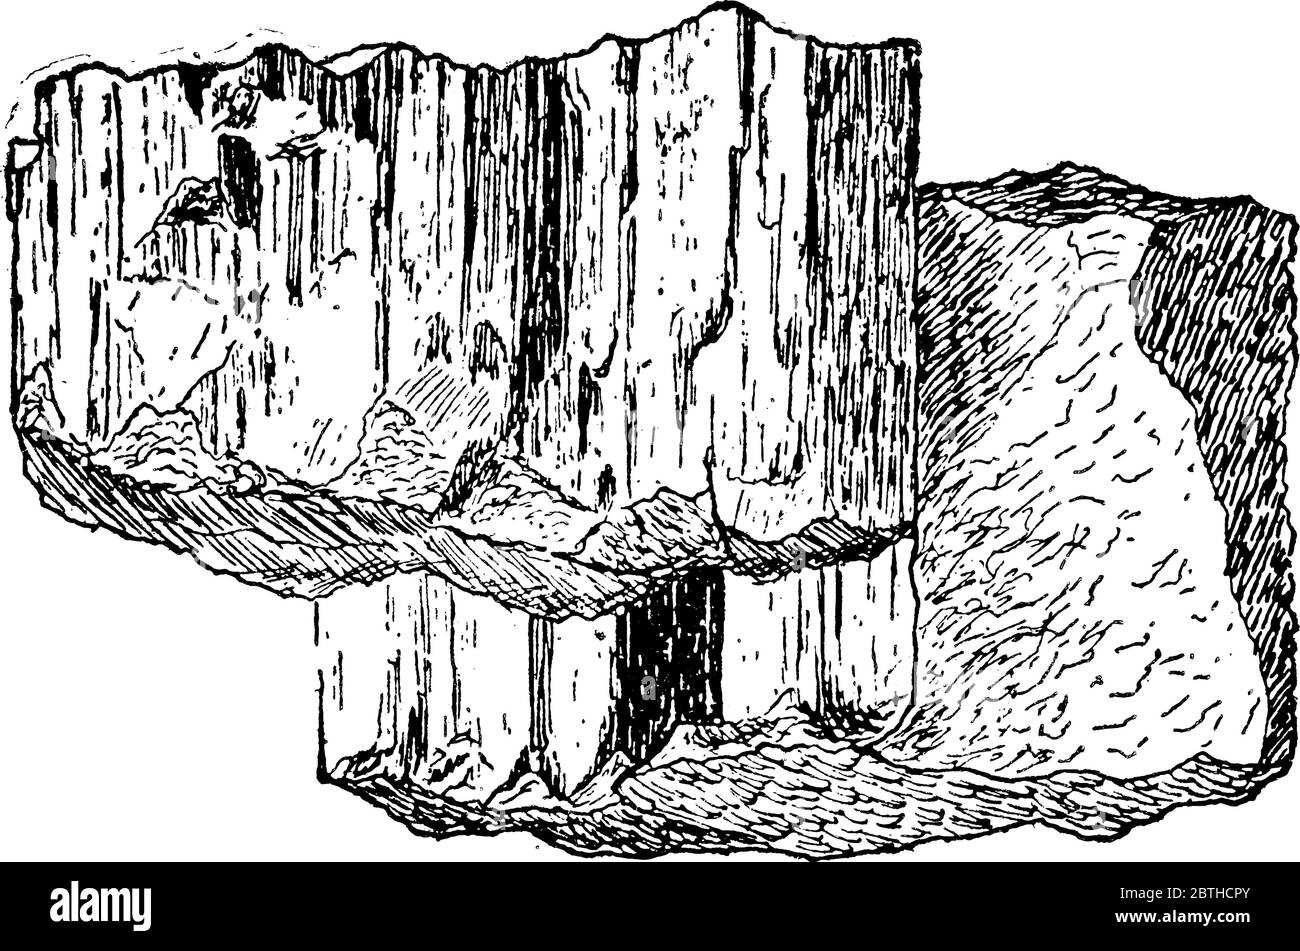 Stylolite sur la roche, les styolites sont des surfaces dentelées dans une masse de roche à laquelle le matériau minéral a été enlevé par dissolution sous pression, lin d'époque Illustration de Vecteur